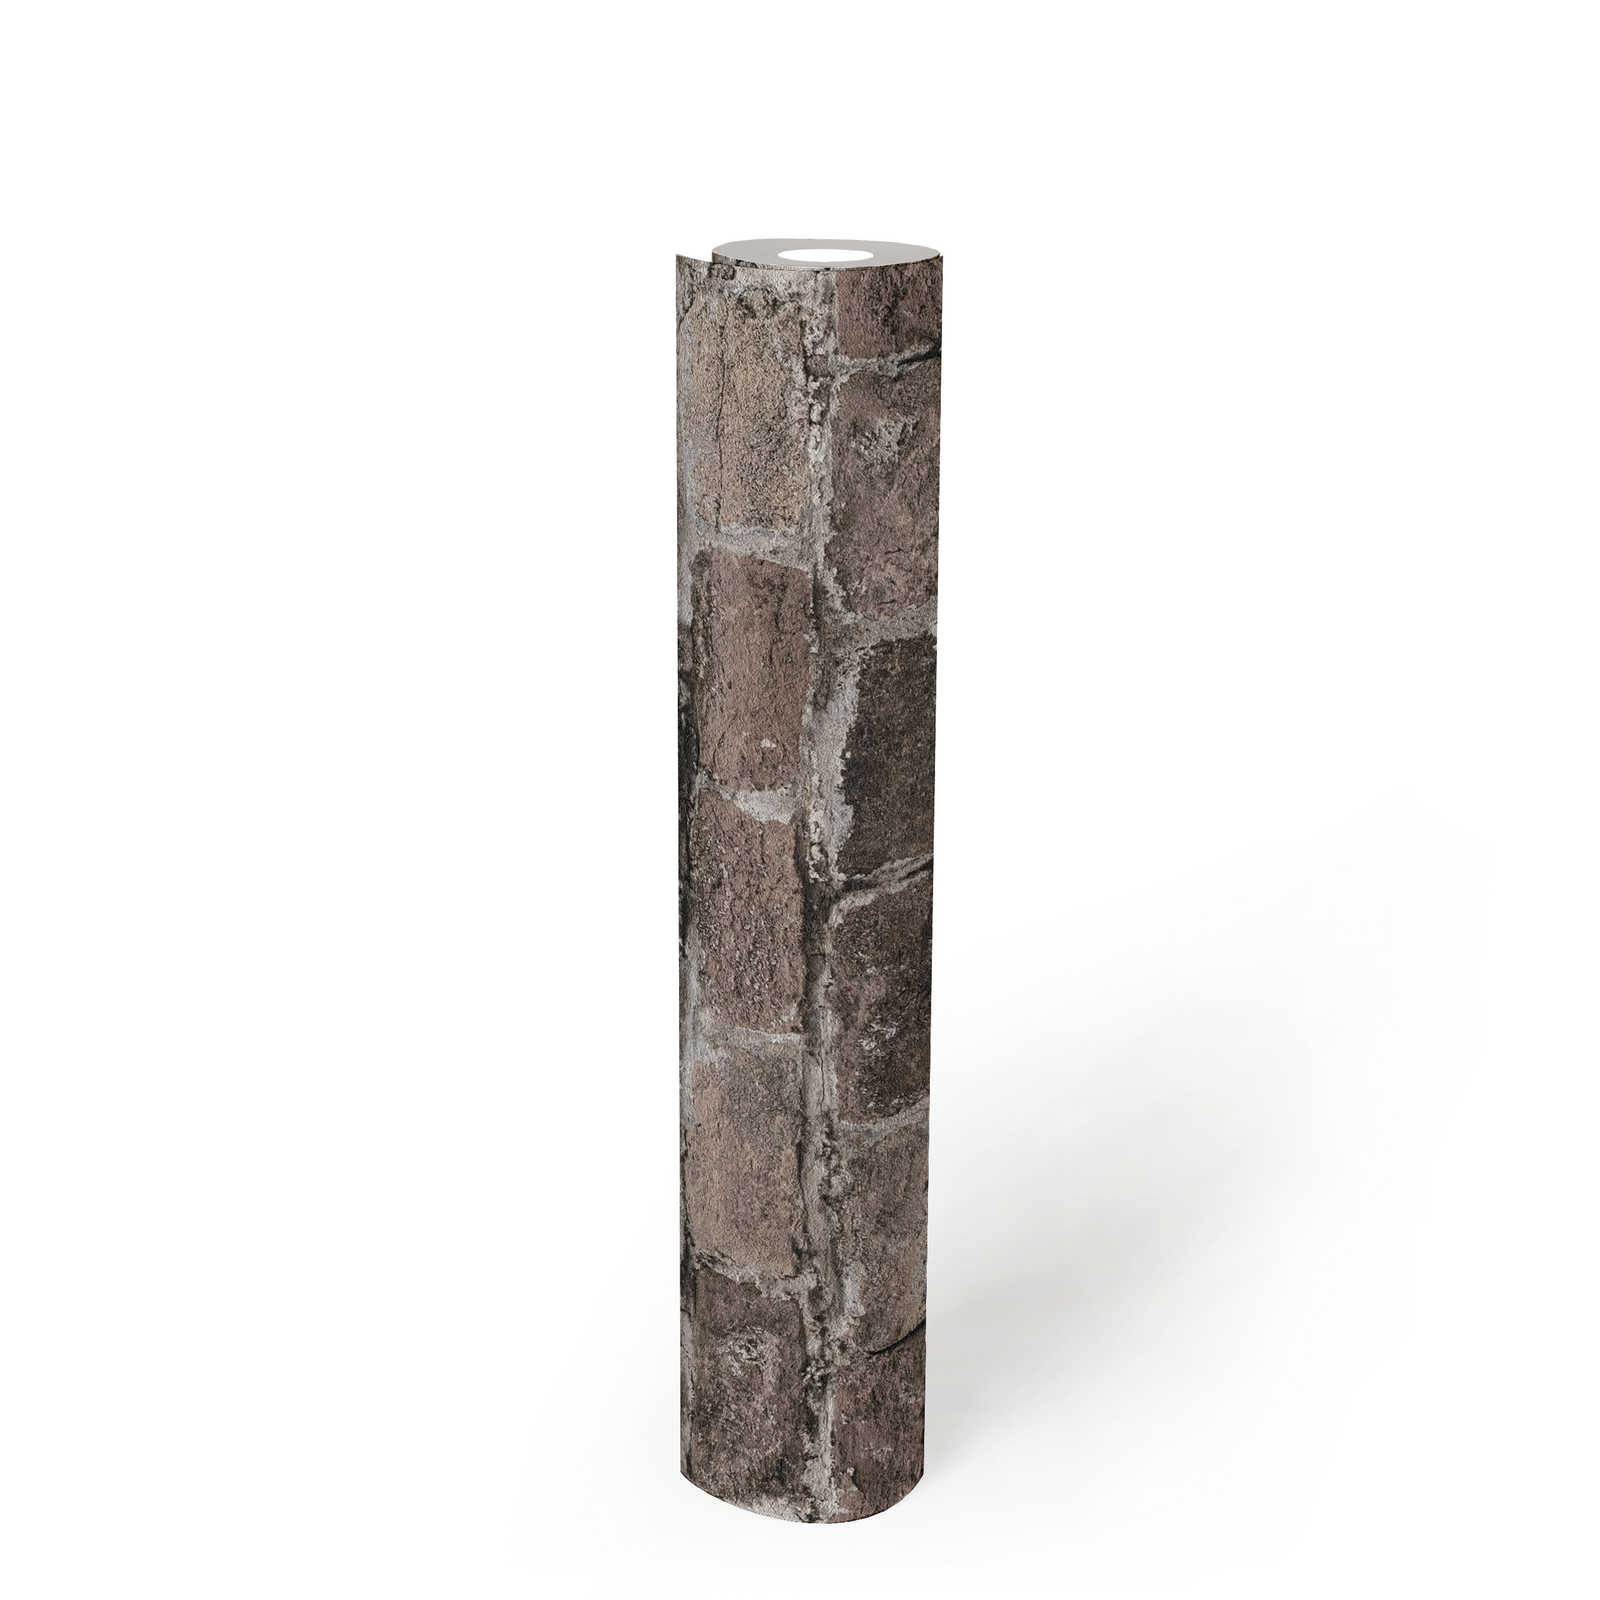             Ziegelsteinmauer Vliestapete – Grau, Braun, Beige
        